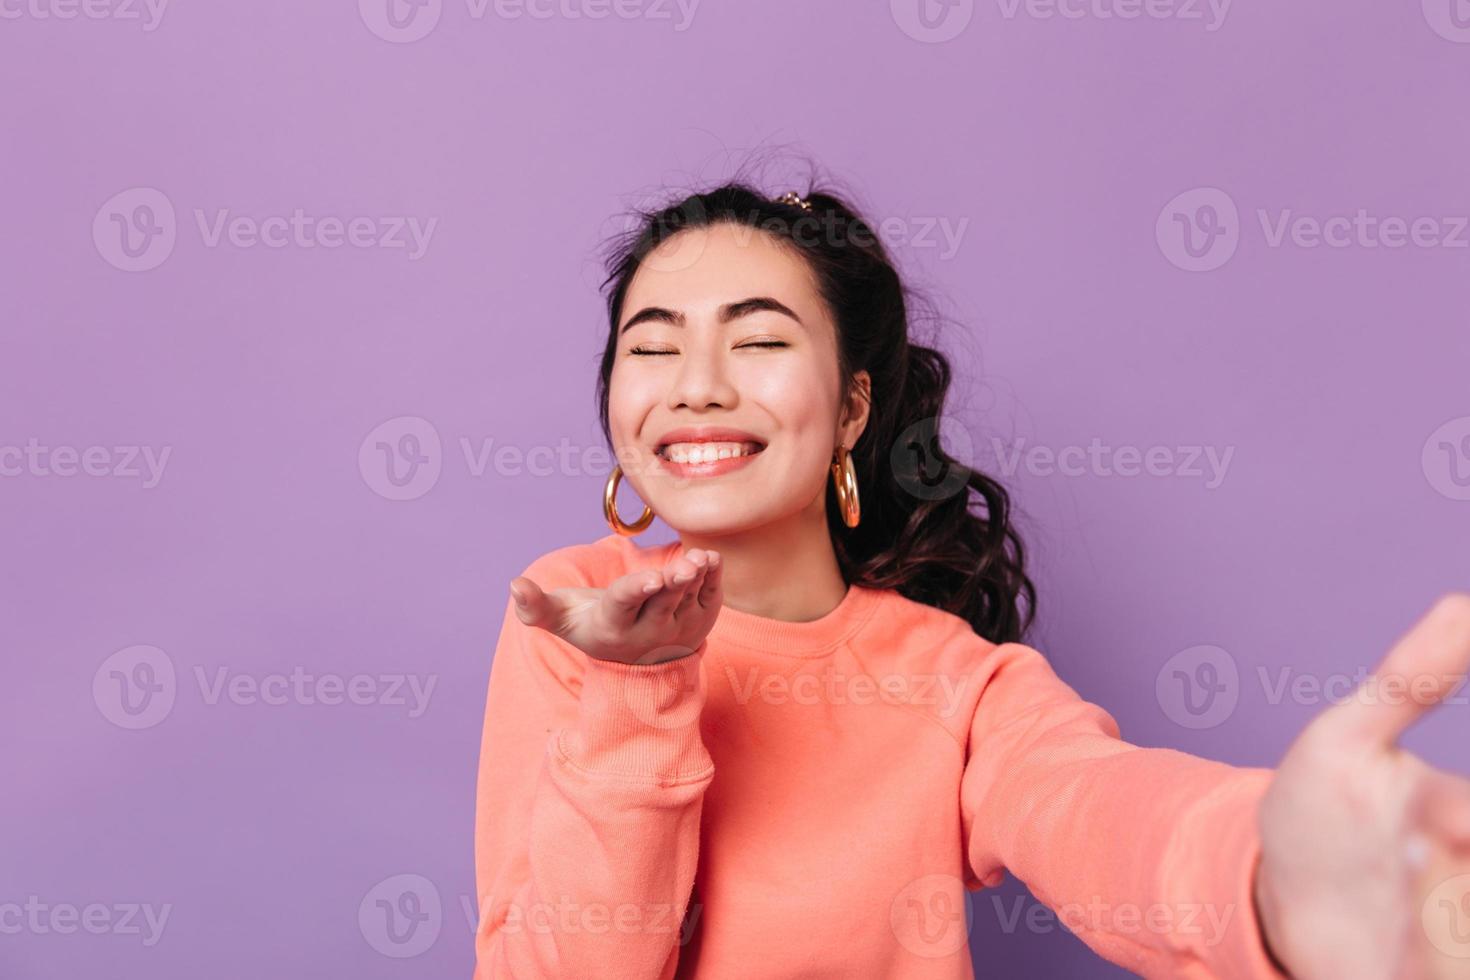 alegre niña china enviando beso de aire a la cámara. foto de estudio de una modelo femenina asiática sonriente tomando